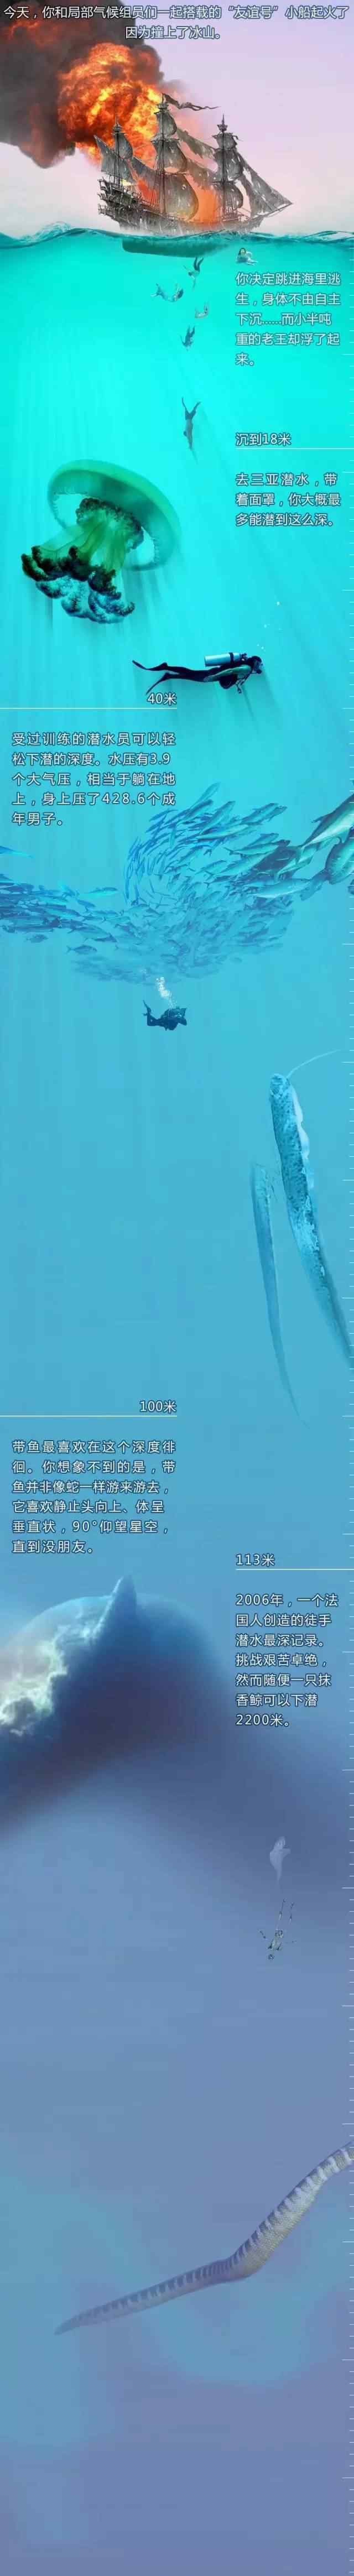 海洋深度超长图一张 一幅深海一万米长图